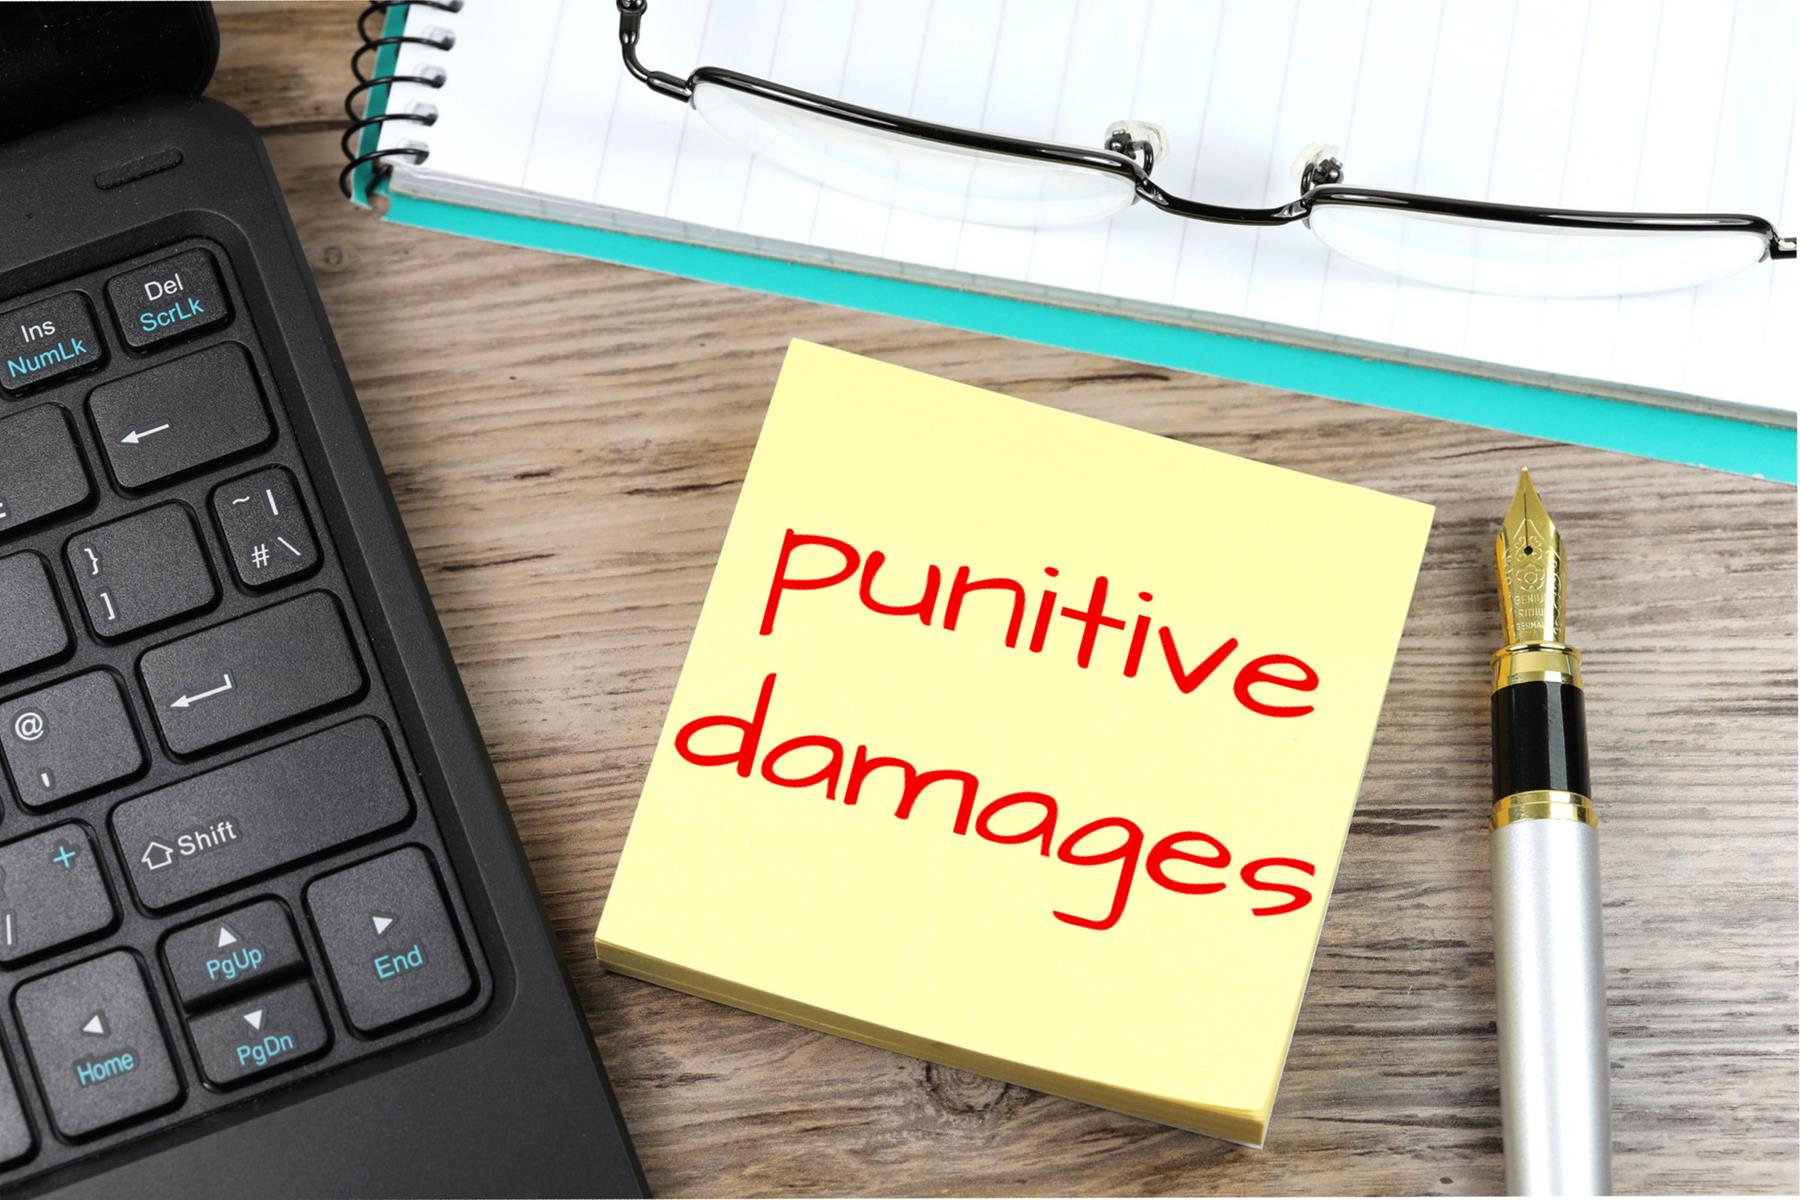 Punitive Damages